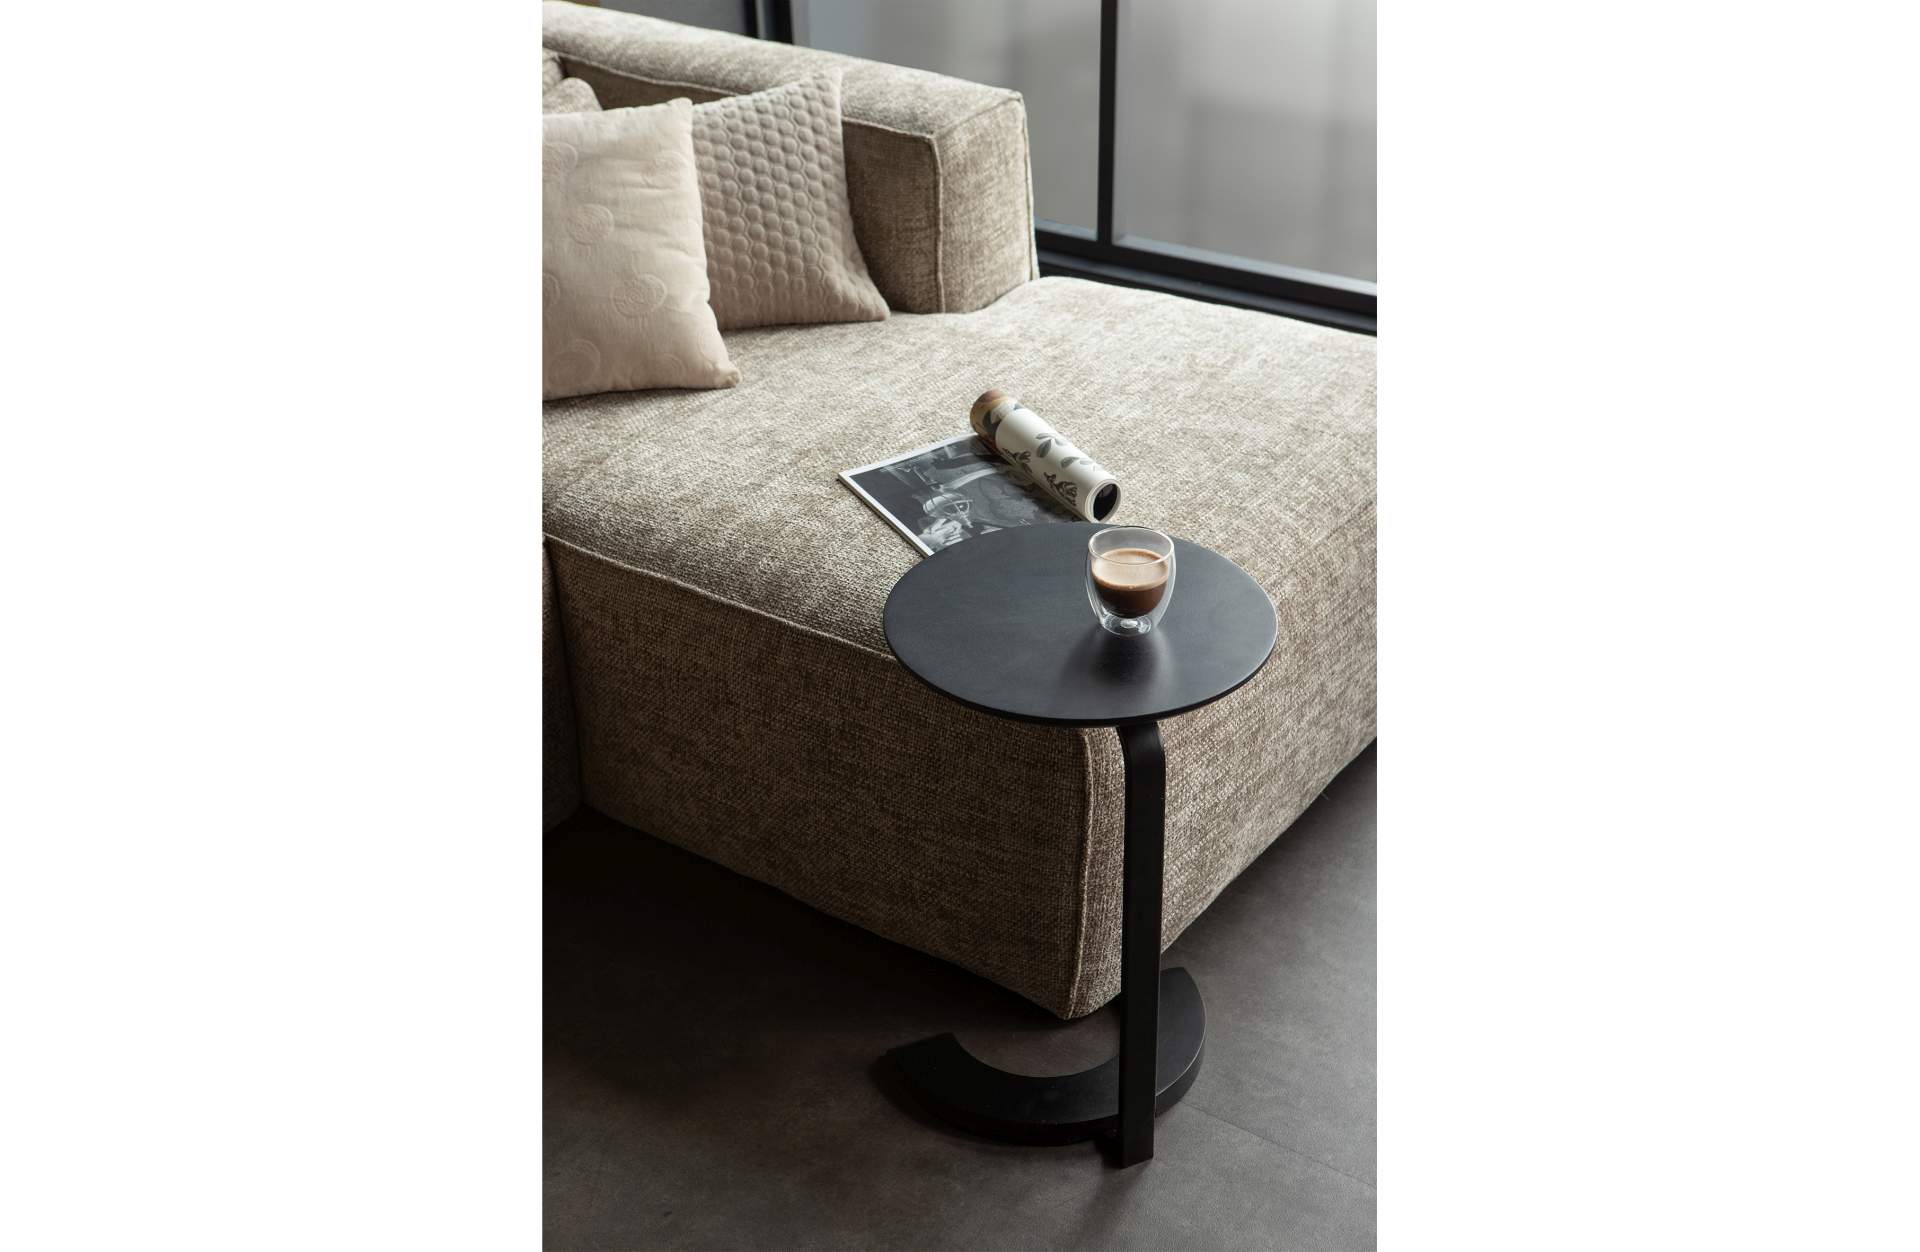 Der Beistelltisch Floor wurde aus Mangoholz gefertigt, welches einen schwarzen Farbton besitzt. Das Gestell des Tisches ist aus Metall.